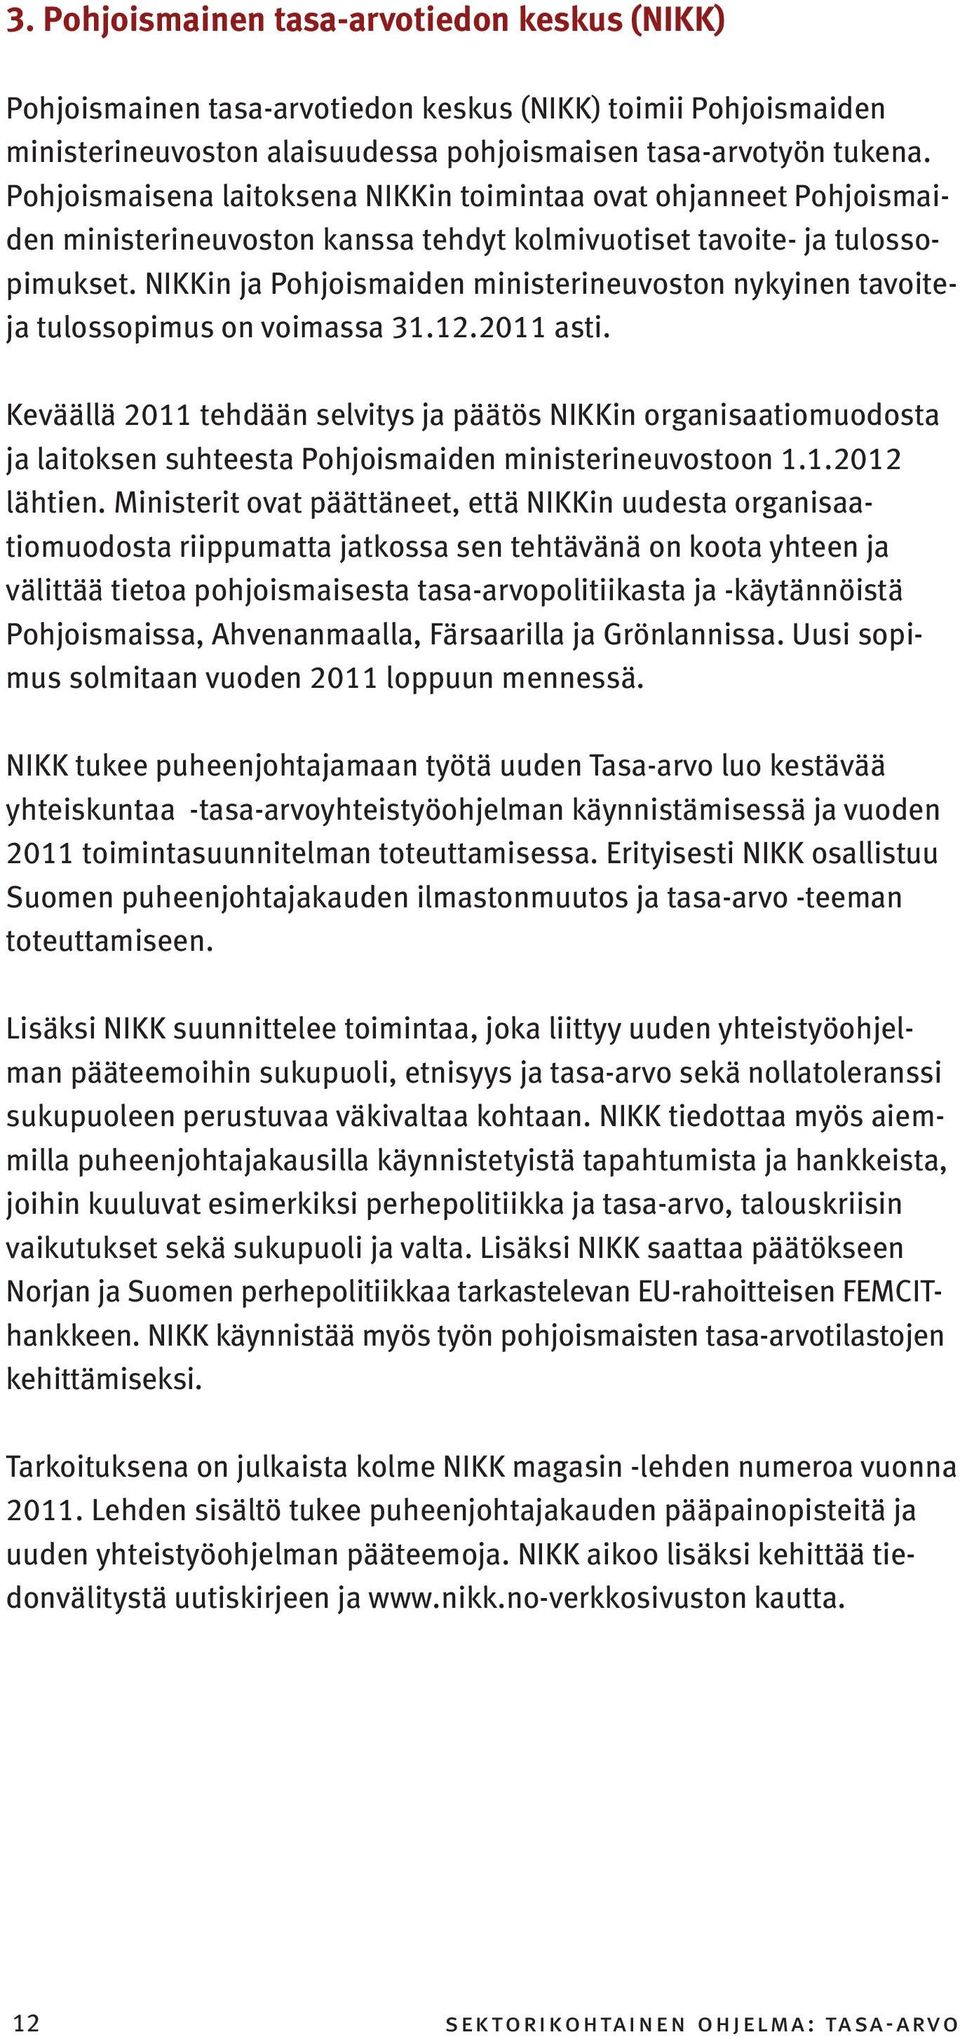 NIKKin ja Pohjoismaiden ministerineuvoston nykyinen tavoiteja tulossopimus on voimassa 31.12.2011 asti.